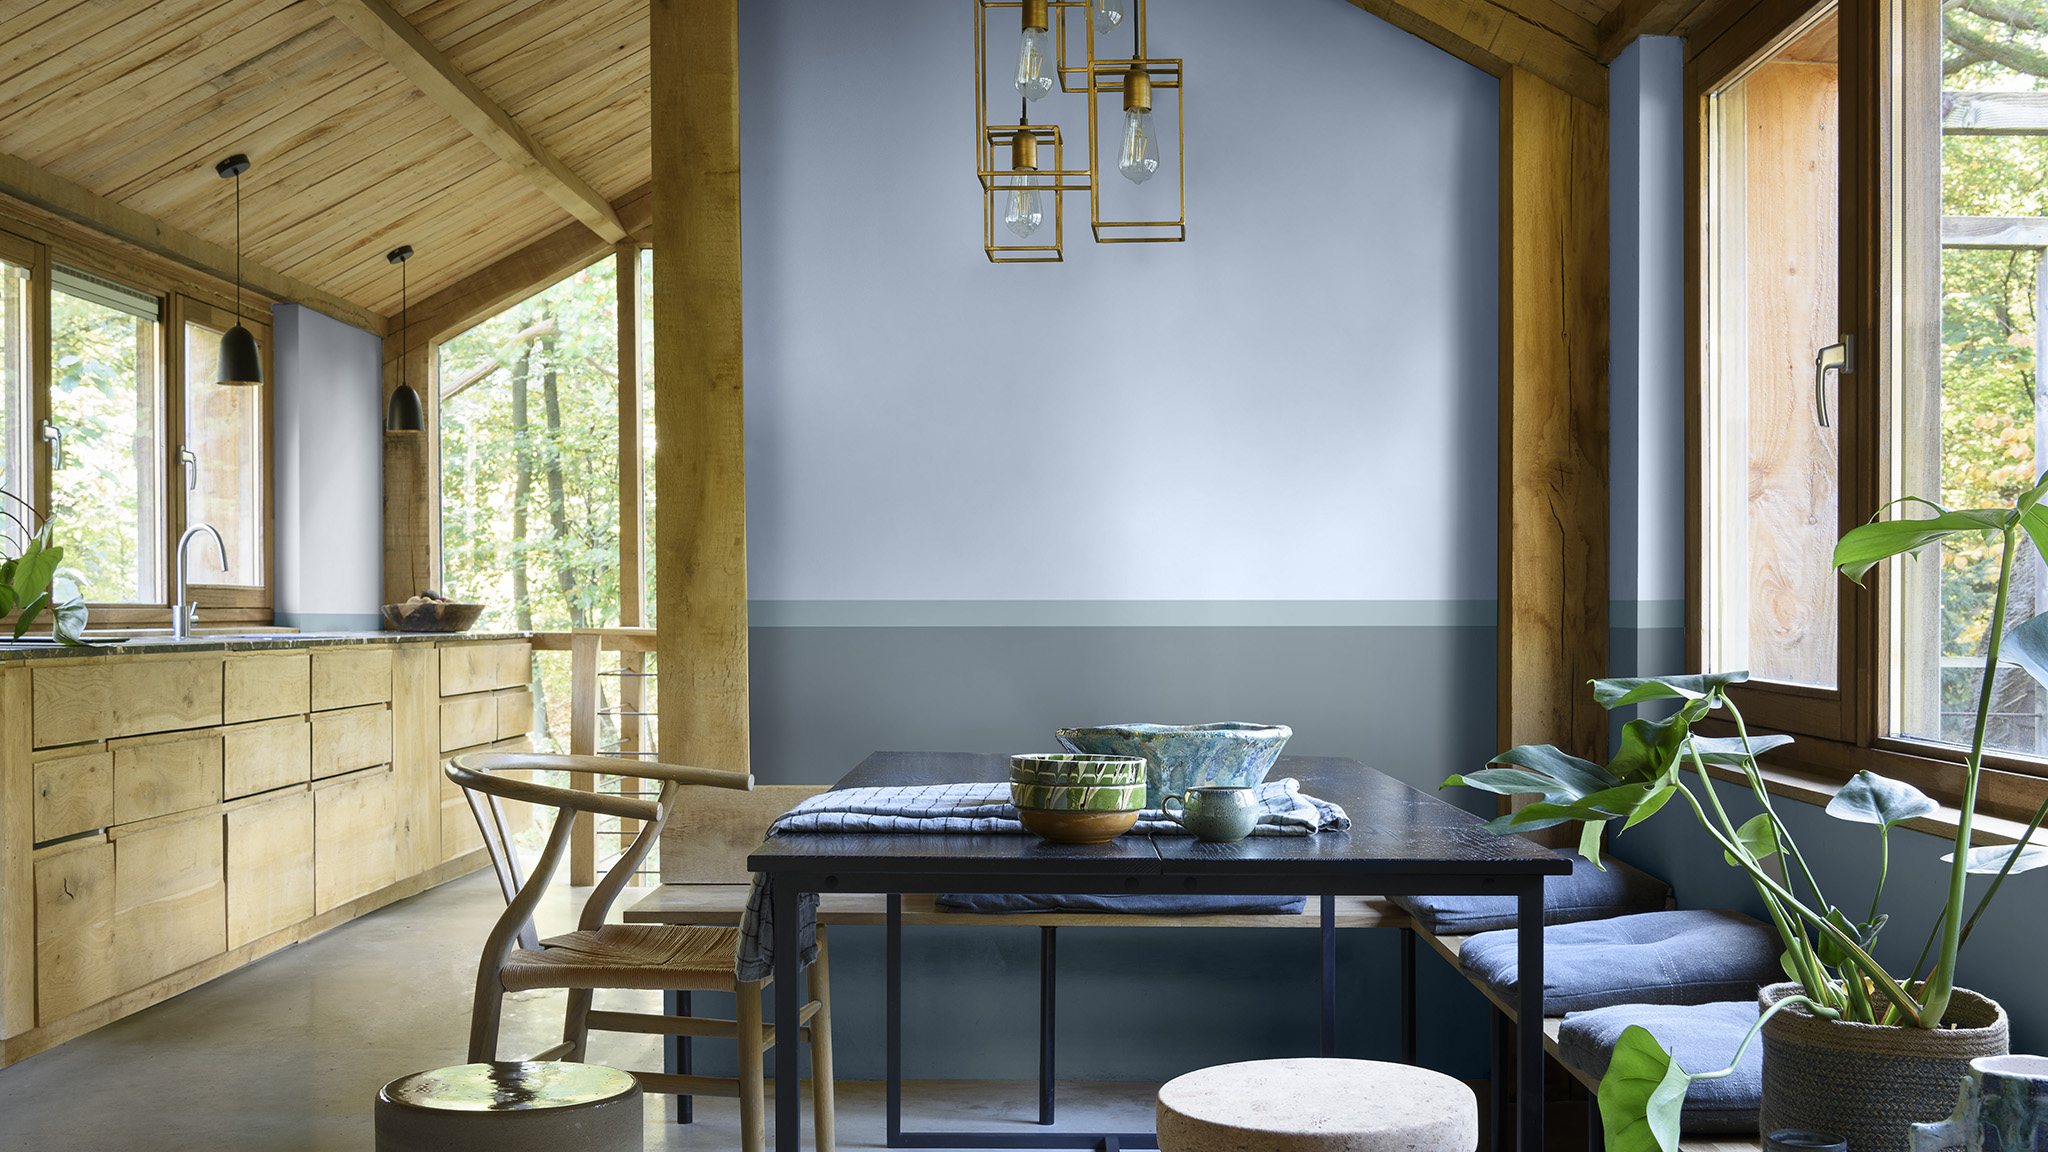 Sala de estar e cozinha integrada decorada com a cor Melodia Suave da Tintas Coral. Os tons de azuis e verdes combinados com móveis de madeira criam possibilidades de decoração inspiradas na natureza. 